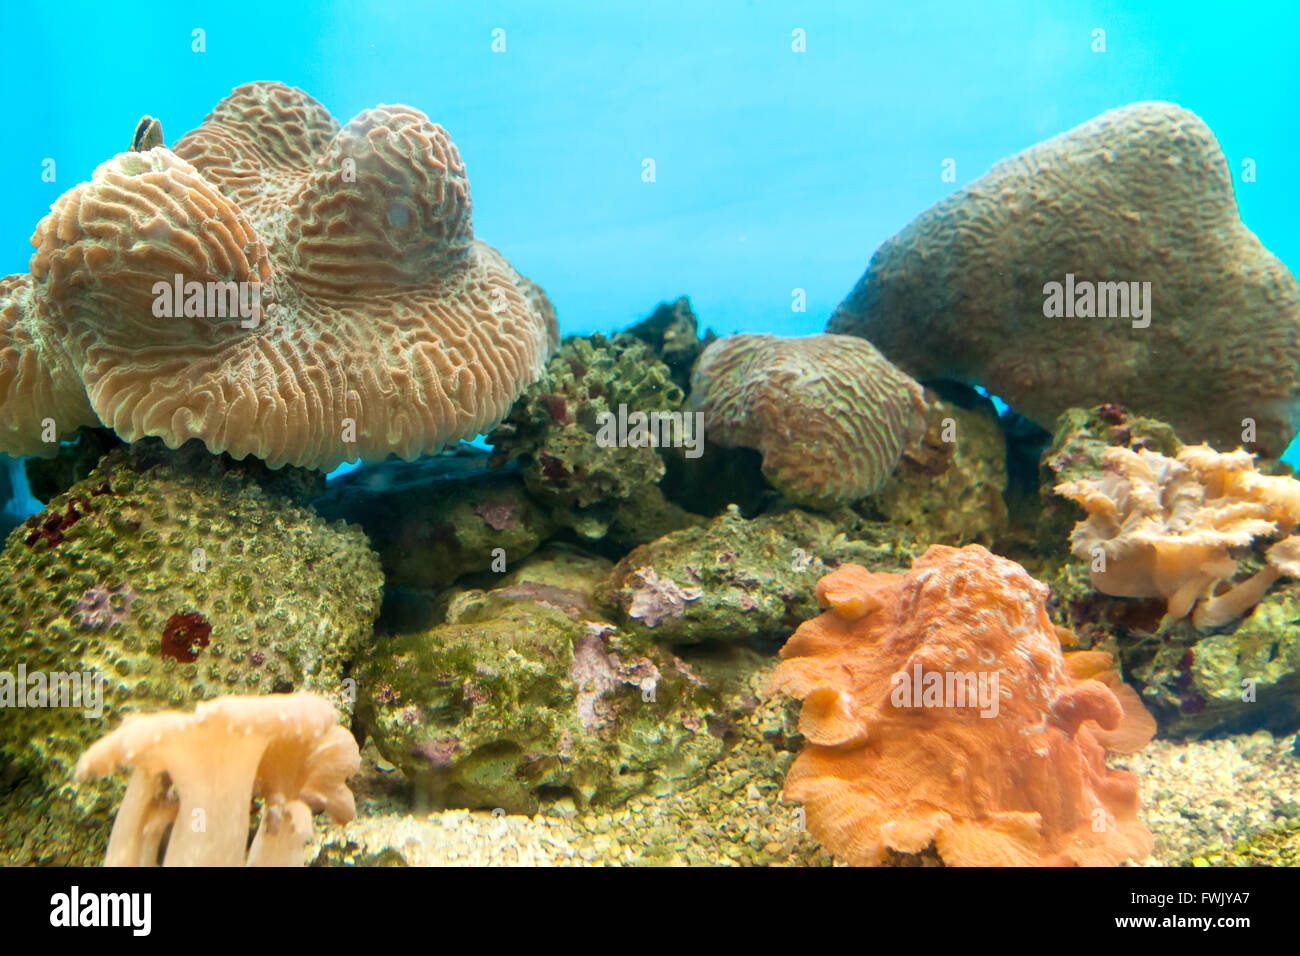 Anemonen sind in freier Wildbahn, Undersea in tropischem Klima weit verbreitet. Stockfoto